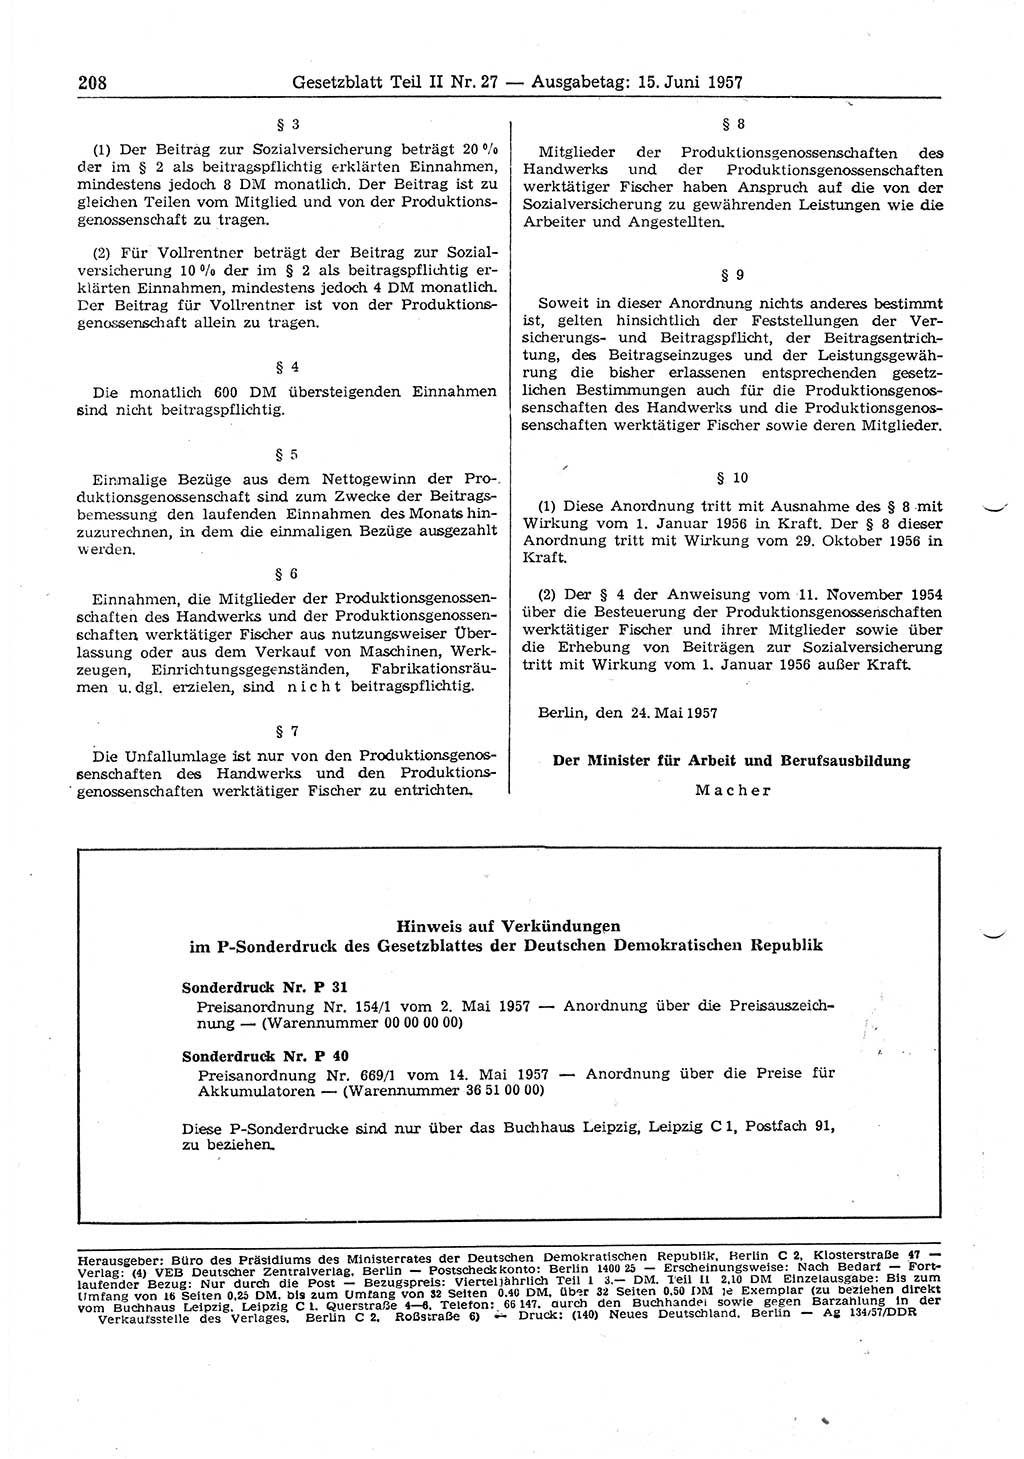 Gesetzblatt (GBl.) der Deutschen Demokratischen Republik (DDR) Teil ⅠⅠ 1957, Seite 208 (GBl. DDR ⅠⅠ 1957, S. 208)